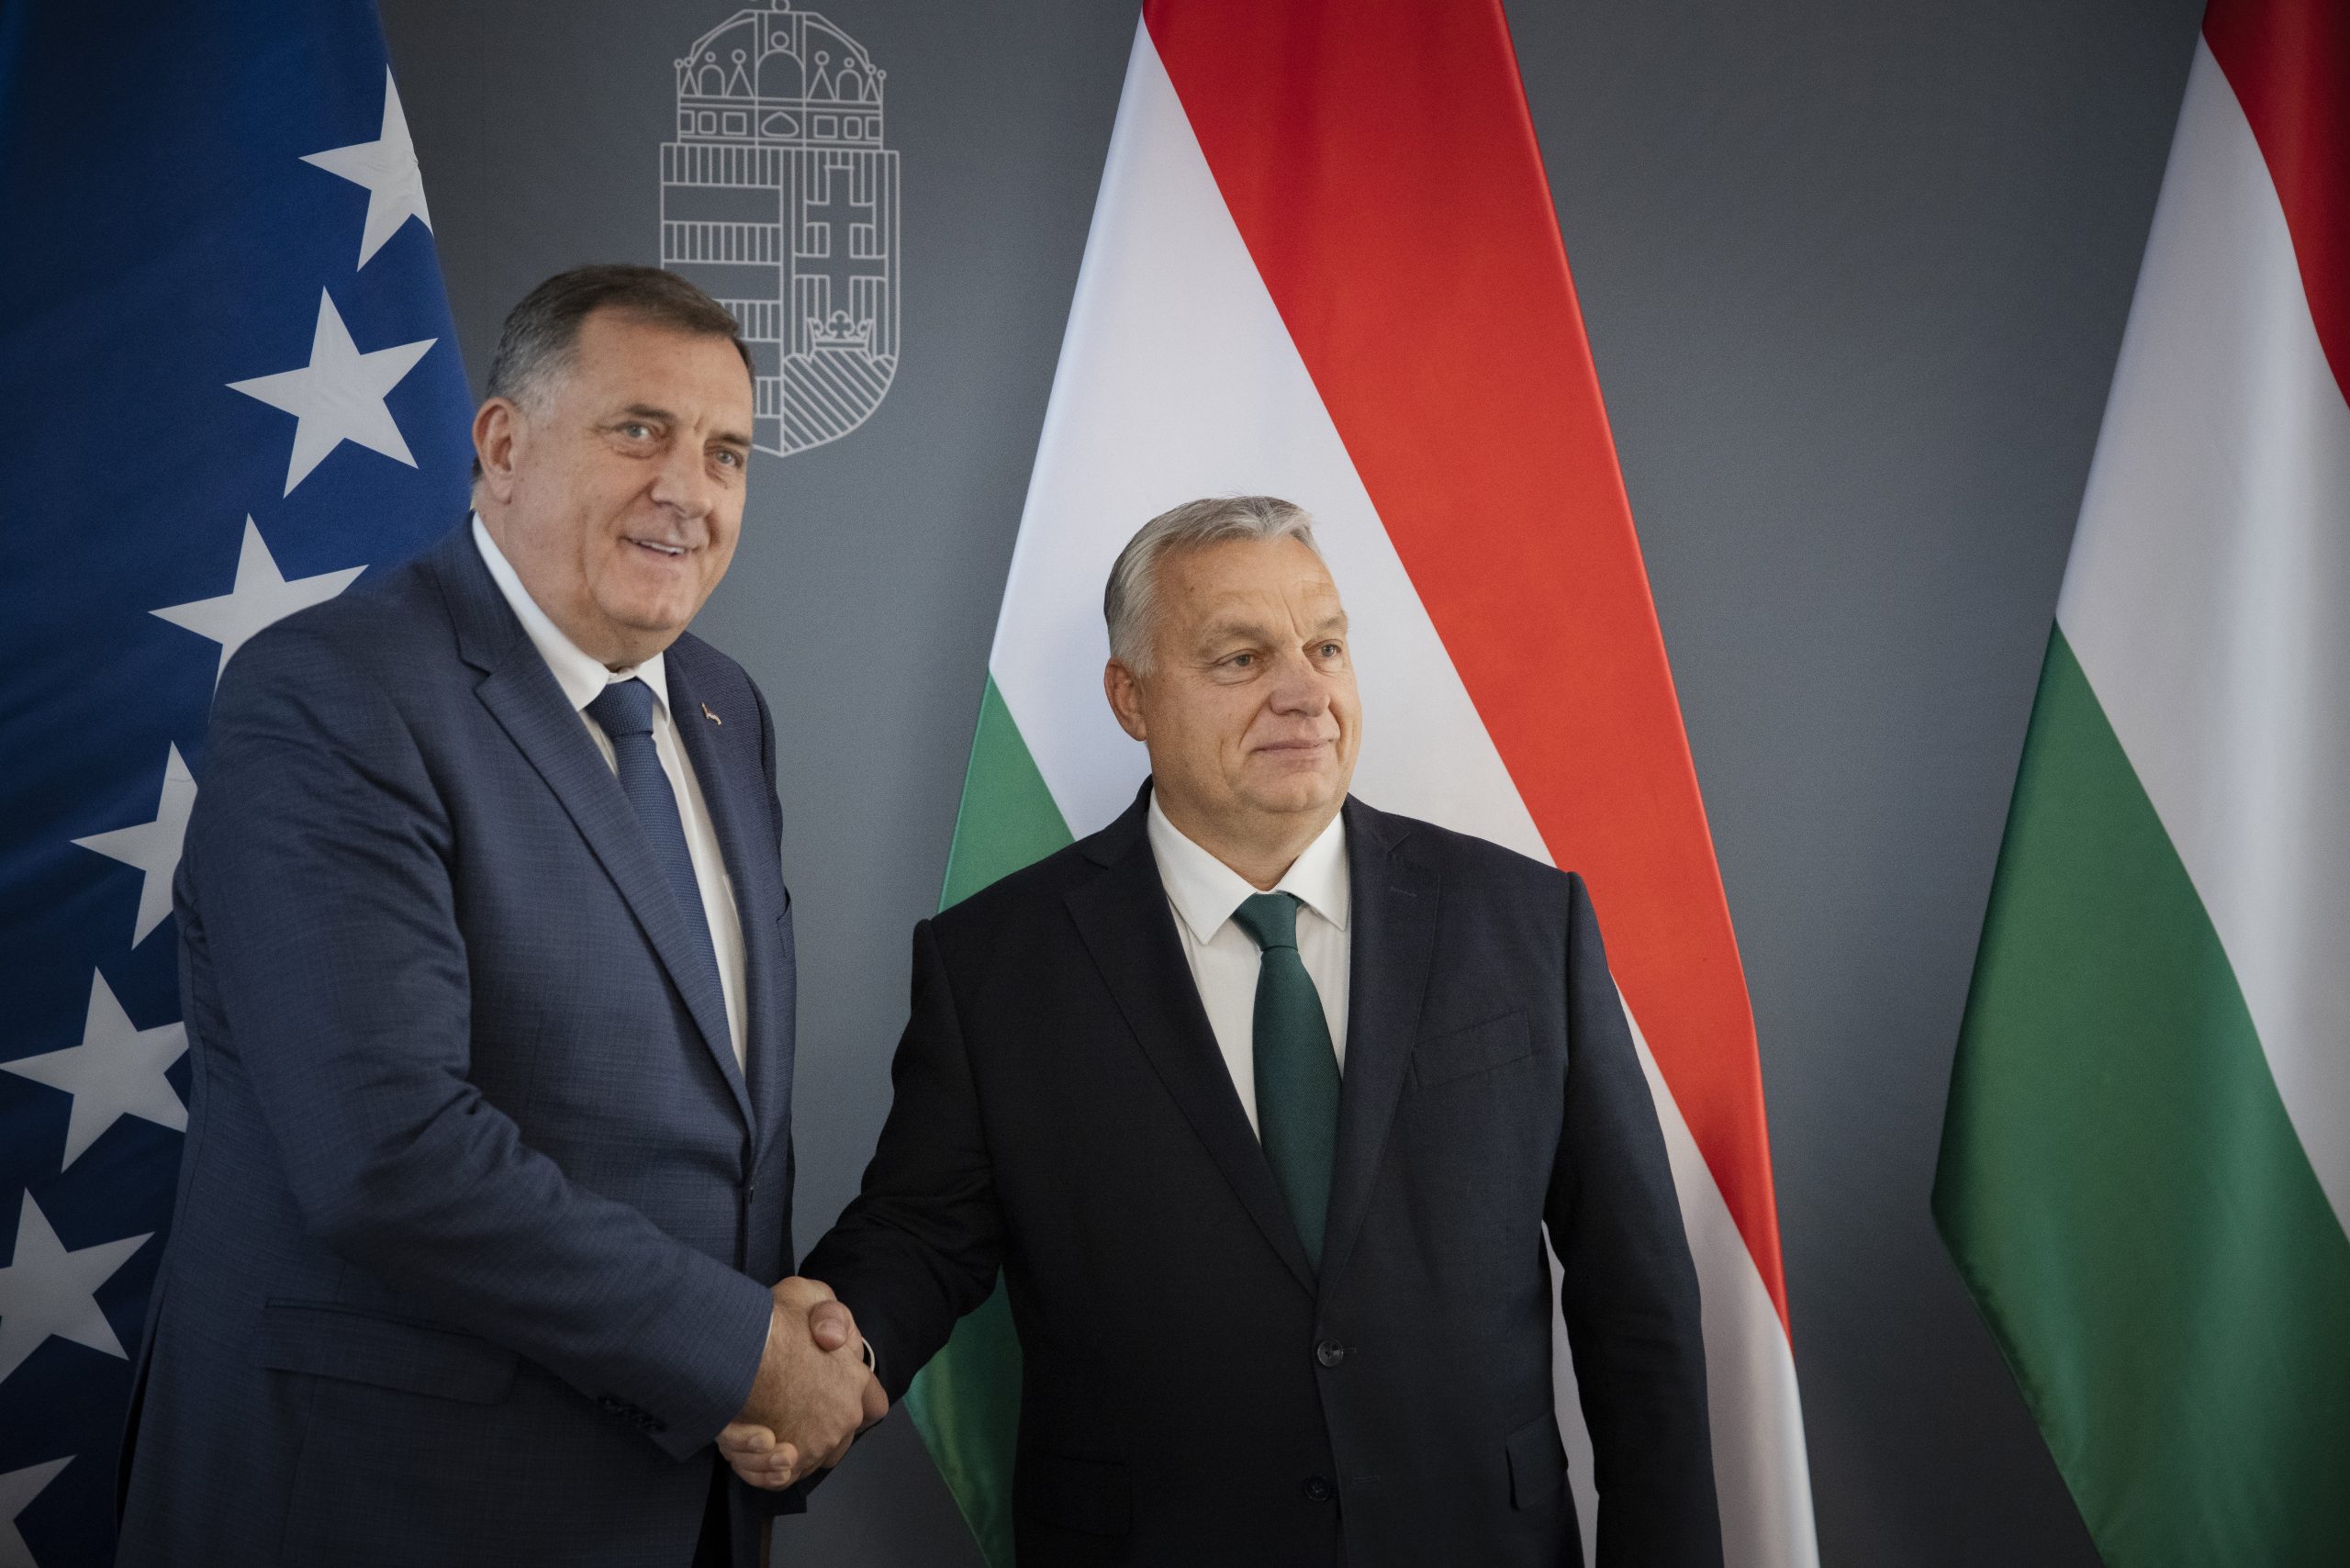 Viktor Orbán unterstützt die EU-Integration der westlichen Balkanstaaten